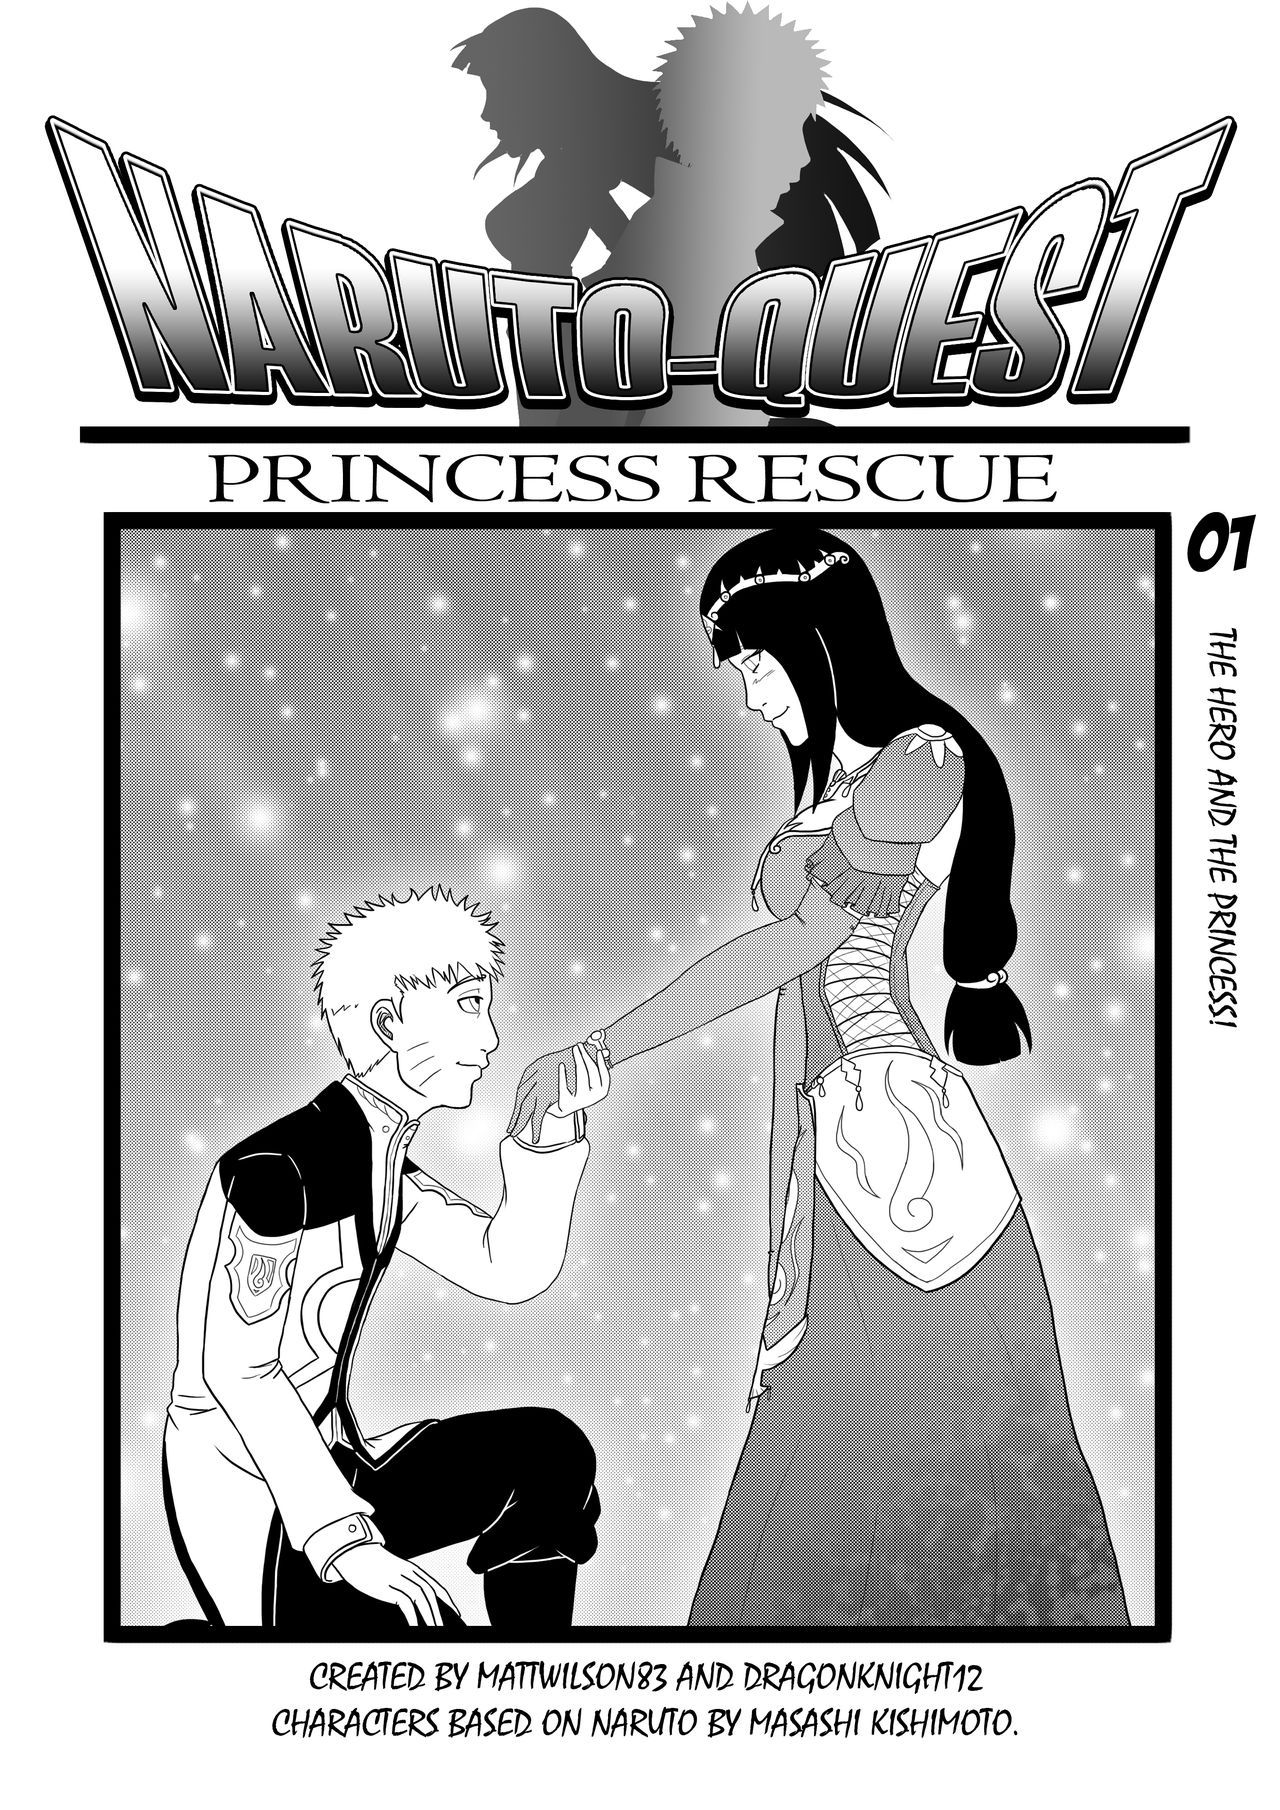 NarutoQuest: Princess Rescue 0-7 9